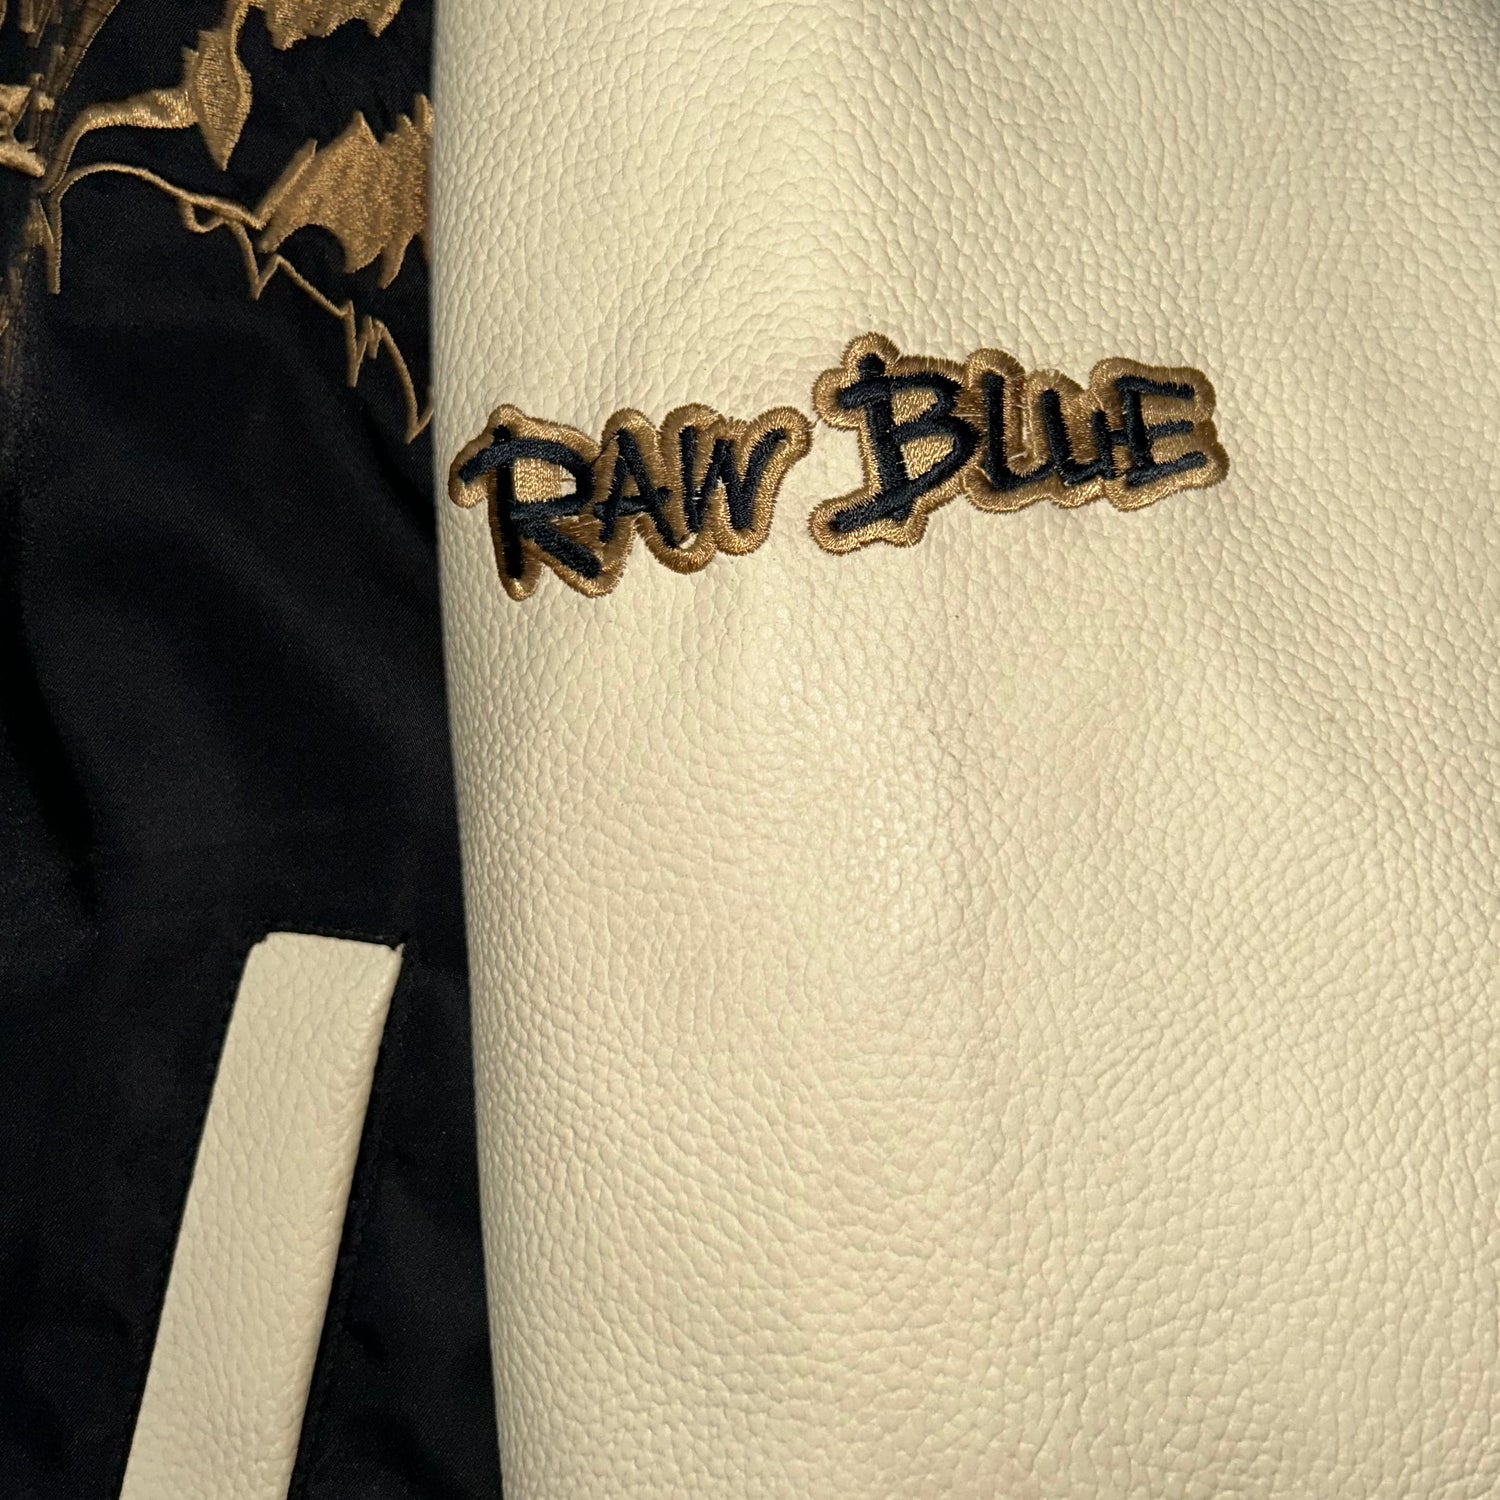 Giacca RAW BLUE con maniche in Pelle  (L)